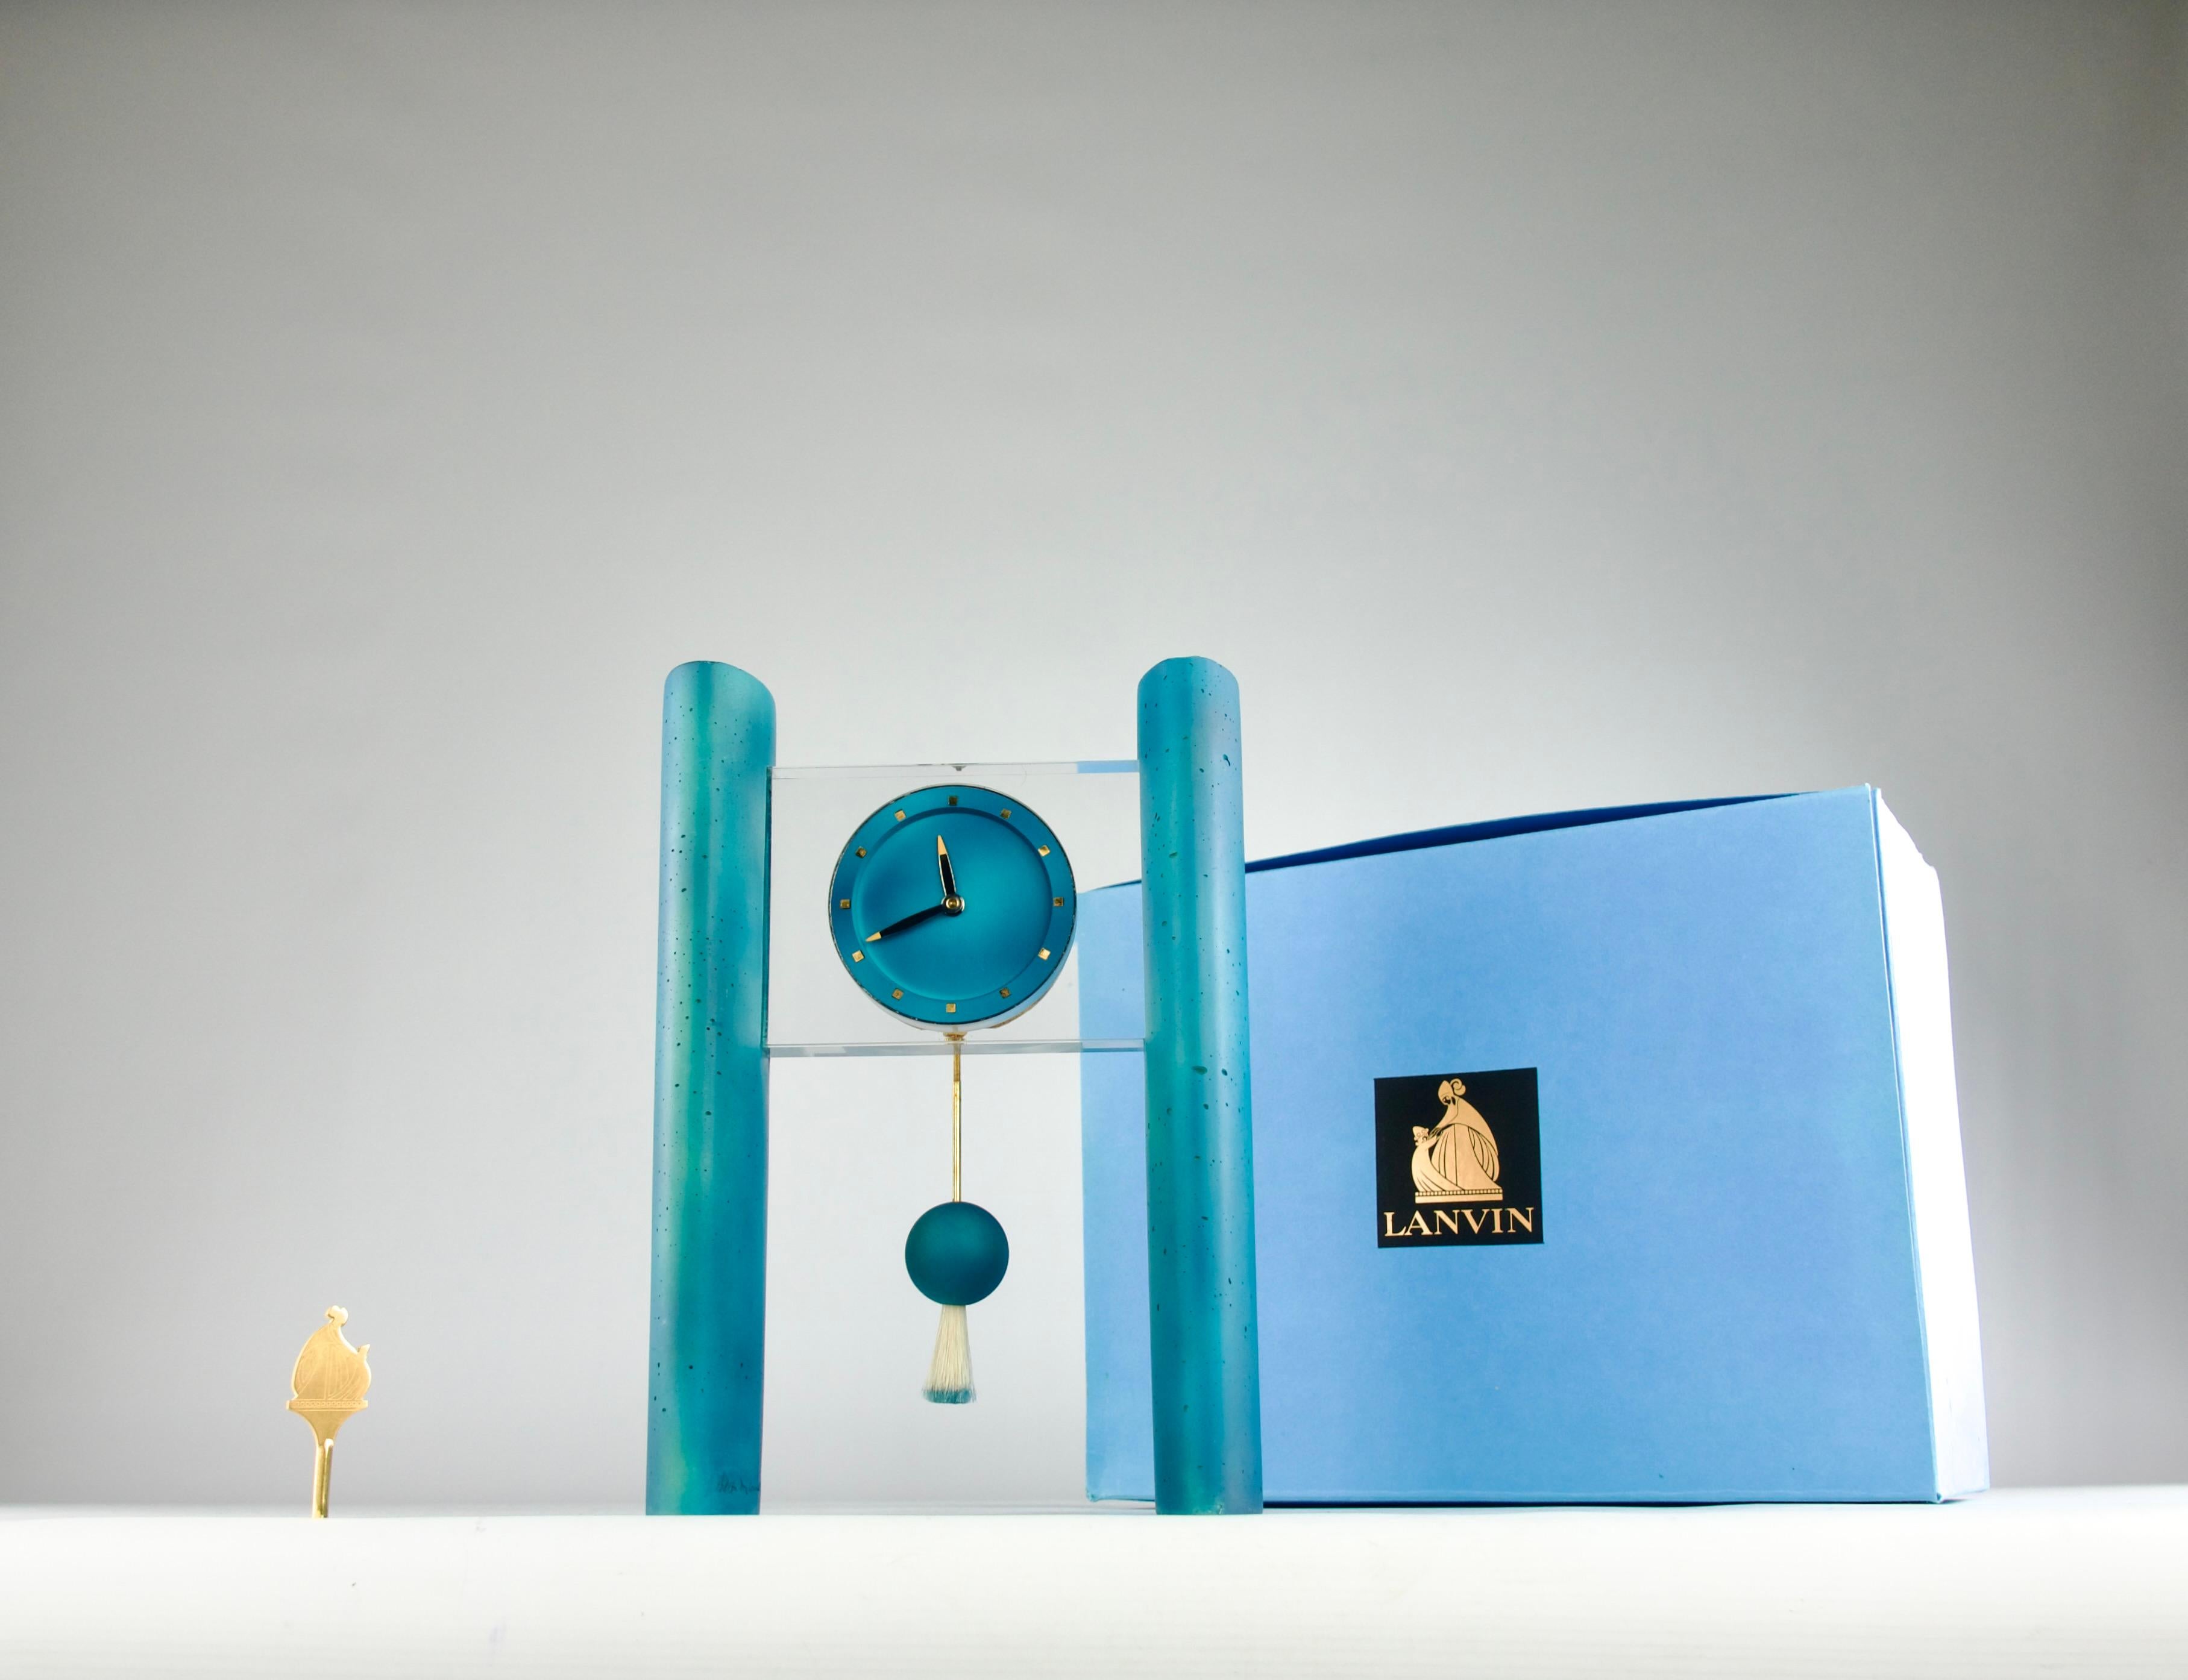 Superbe et extrêmement rare pendule de cheminée Memphis mid-century design en ciment bleu, poils de castor et plexiglas par Hilton McConnico pour Lanvin, fabriquée par Hour Lavigne en 1992. L'horloge est signée et numérotée 29/50.

Dans sa boîte